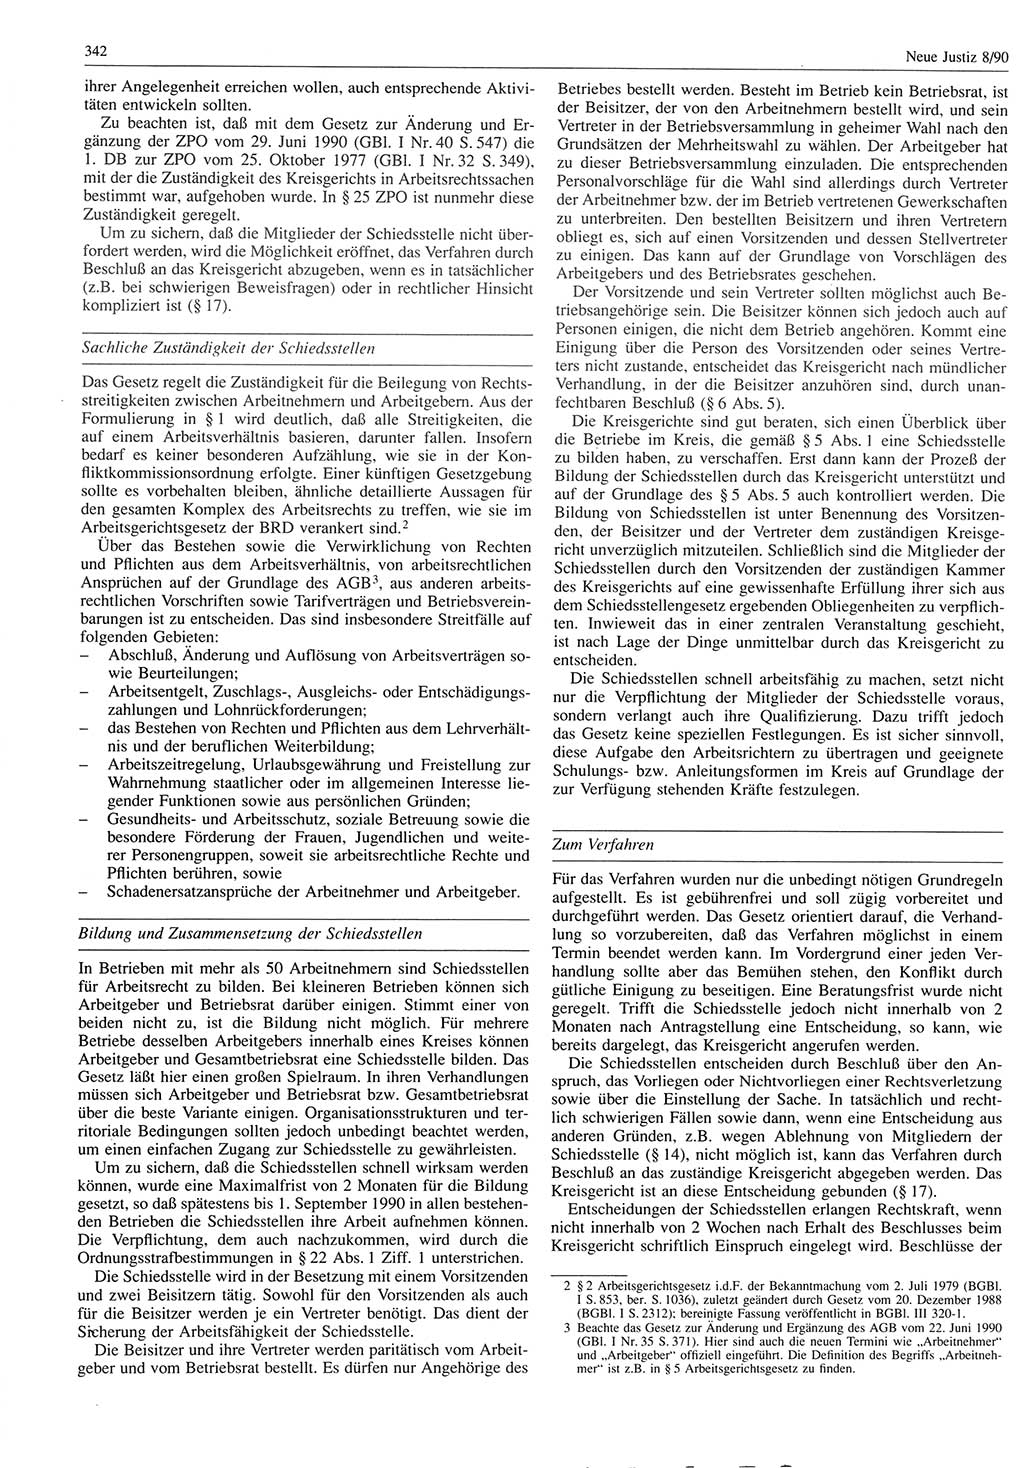 Neue Justiz (NJ), Zeitschrift für Rechtsetzung und Rechtsanwendung [Deutsche Demokratische Republik (DDR)], 44. Jahrgang 1990, Seite 342 (NJ DDR 1990, S. 342)